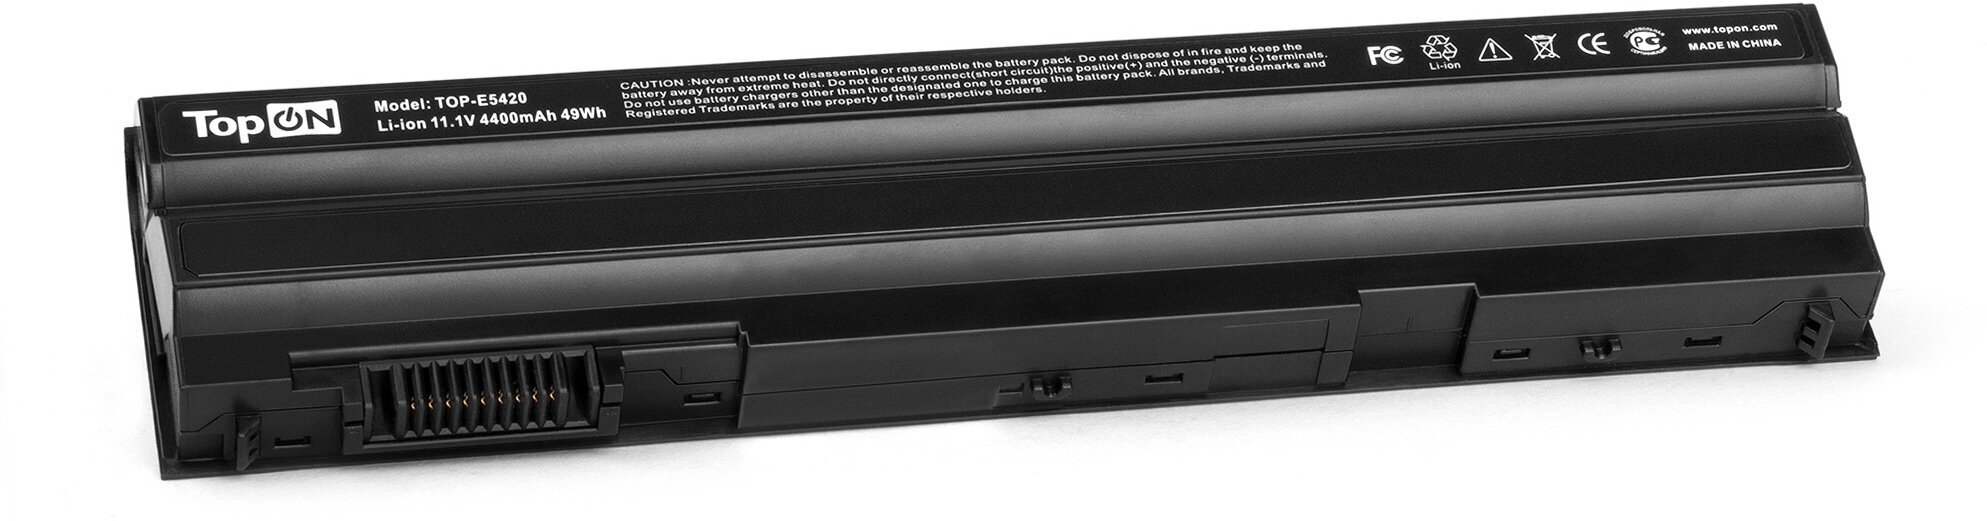 Аккумулятор для ноутбука Dell Latitude E5420 E5430 E5520 E5530 E6420 E6430 E6440 E6520 E6530 Series. 11.1V 4400mAh PN: 312-1163 T54FJ